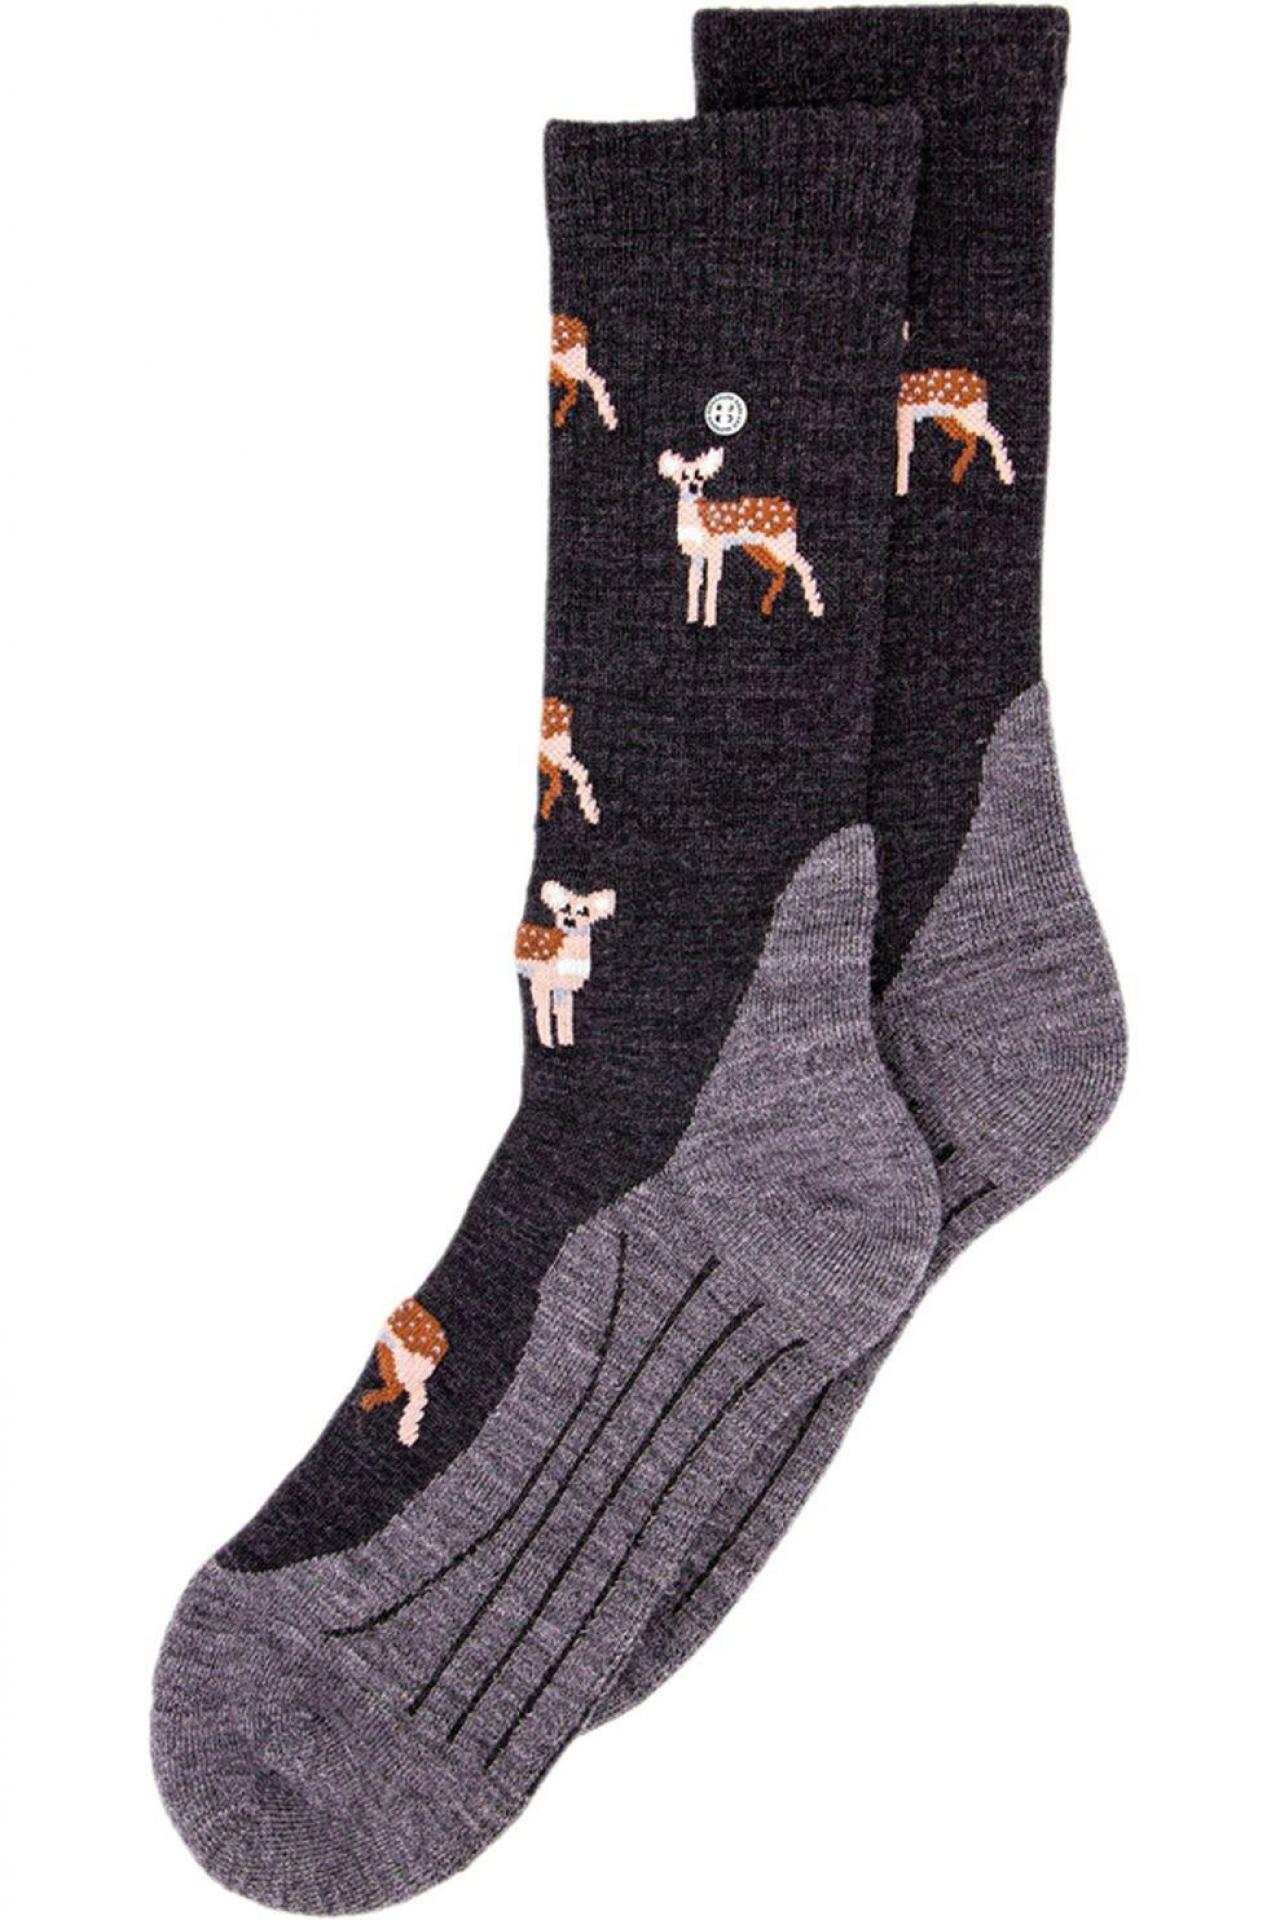 Warme voeten met Bambi-motief (14,95 euro), van A.S. Adventure.